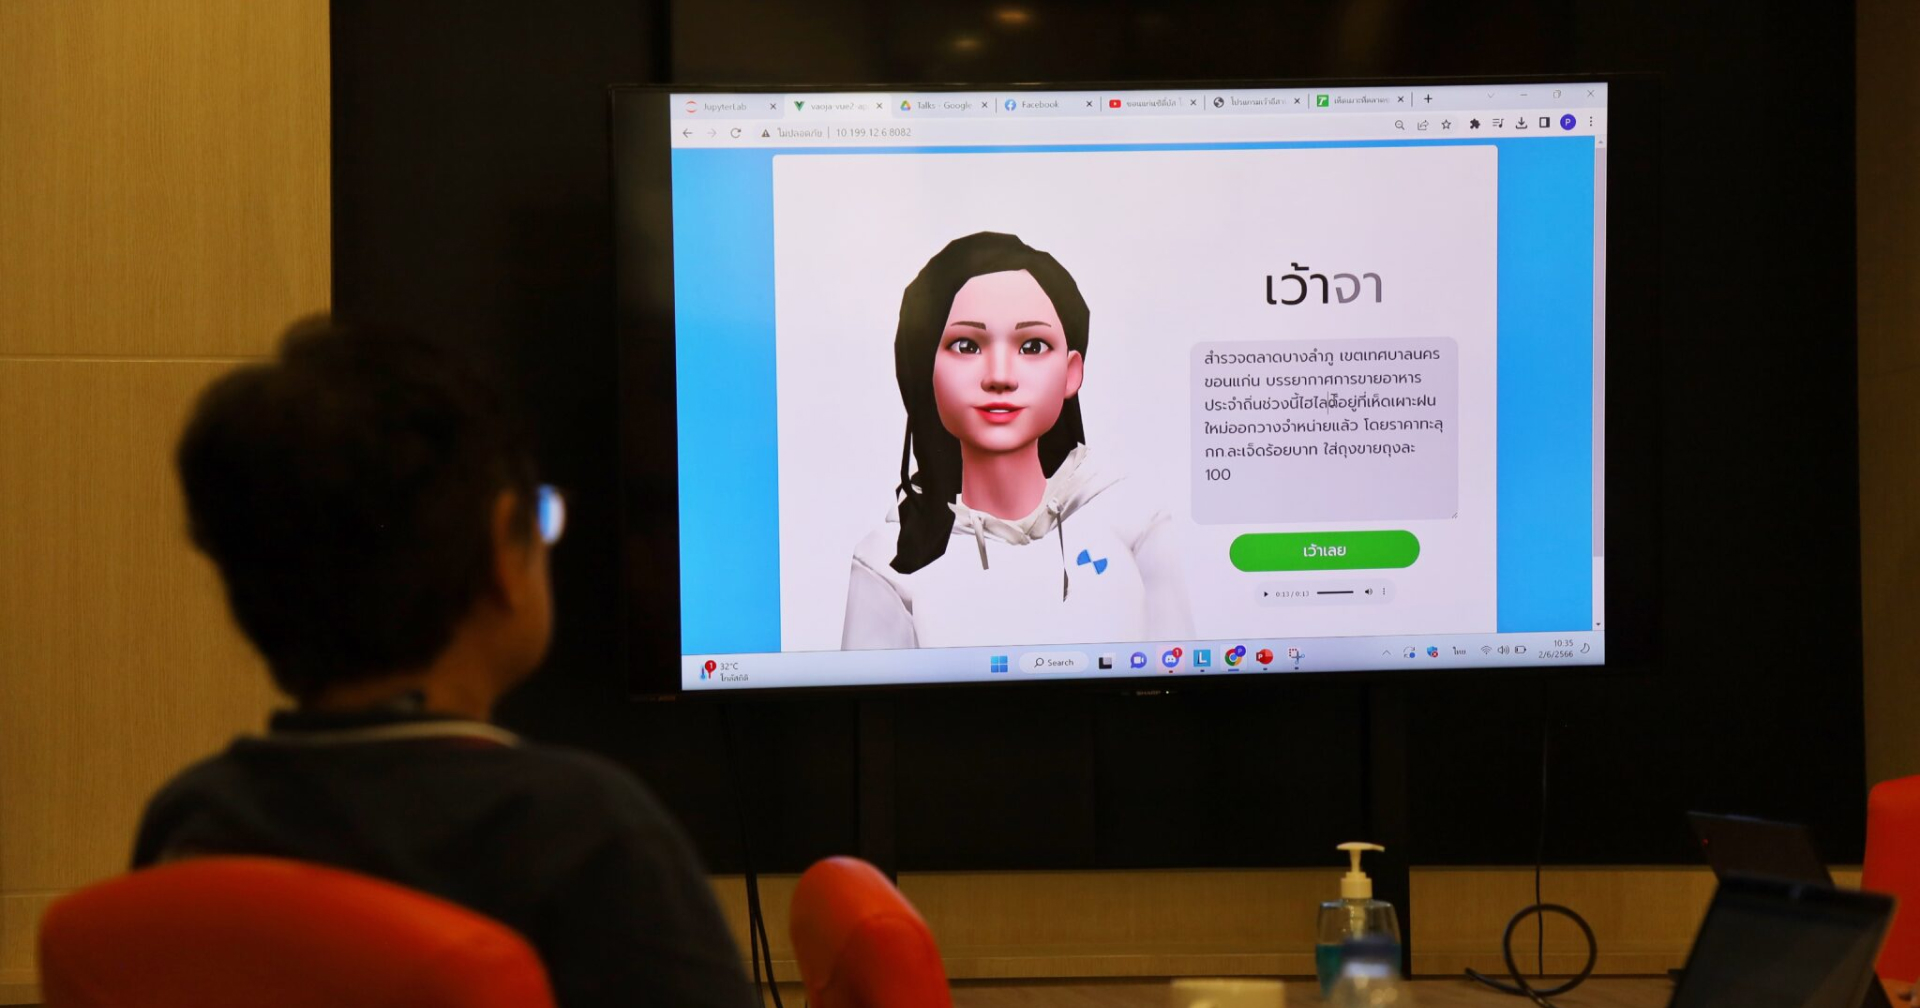 AI บ้านเฮา มหาวิทยาลัยขอนแก่นเปิดตัว เว้าจา AI พูดเสียงภาษาอีสานที่แรกของประเทศไทย